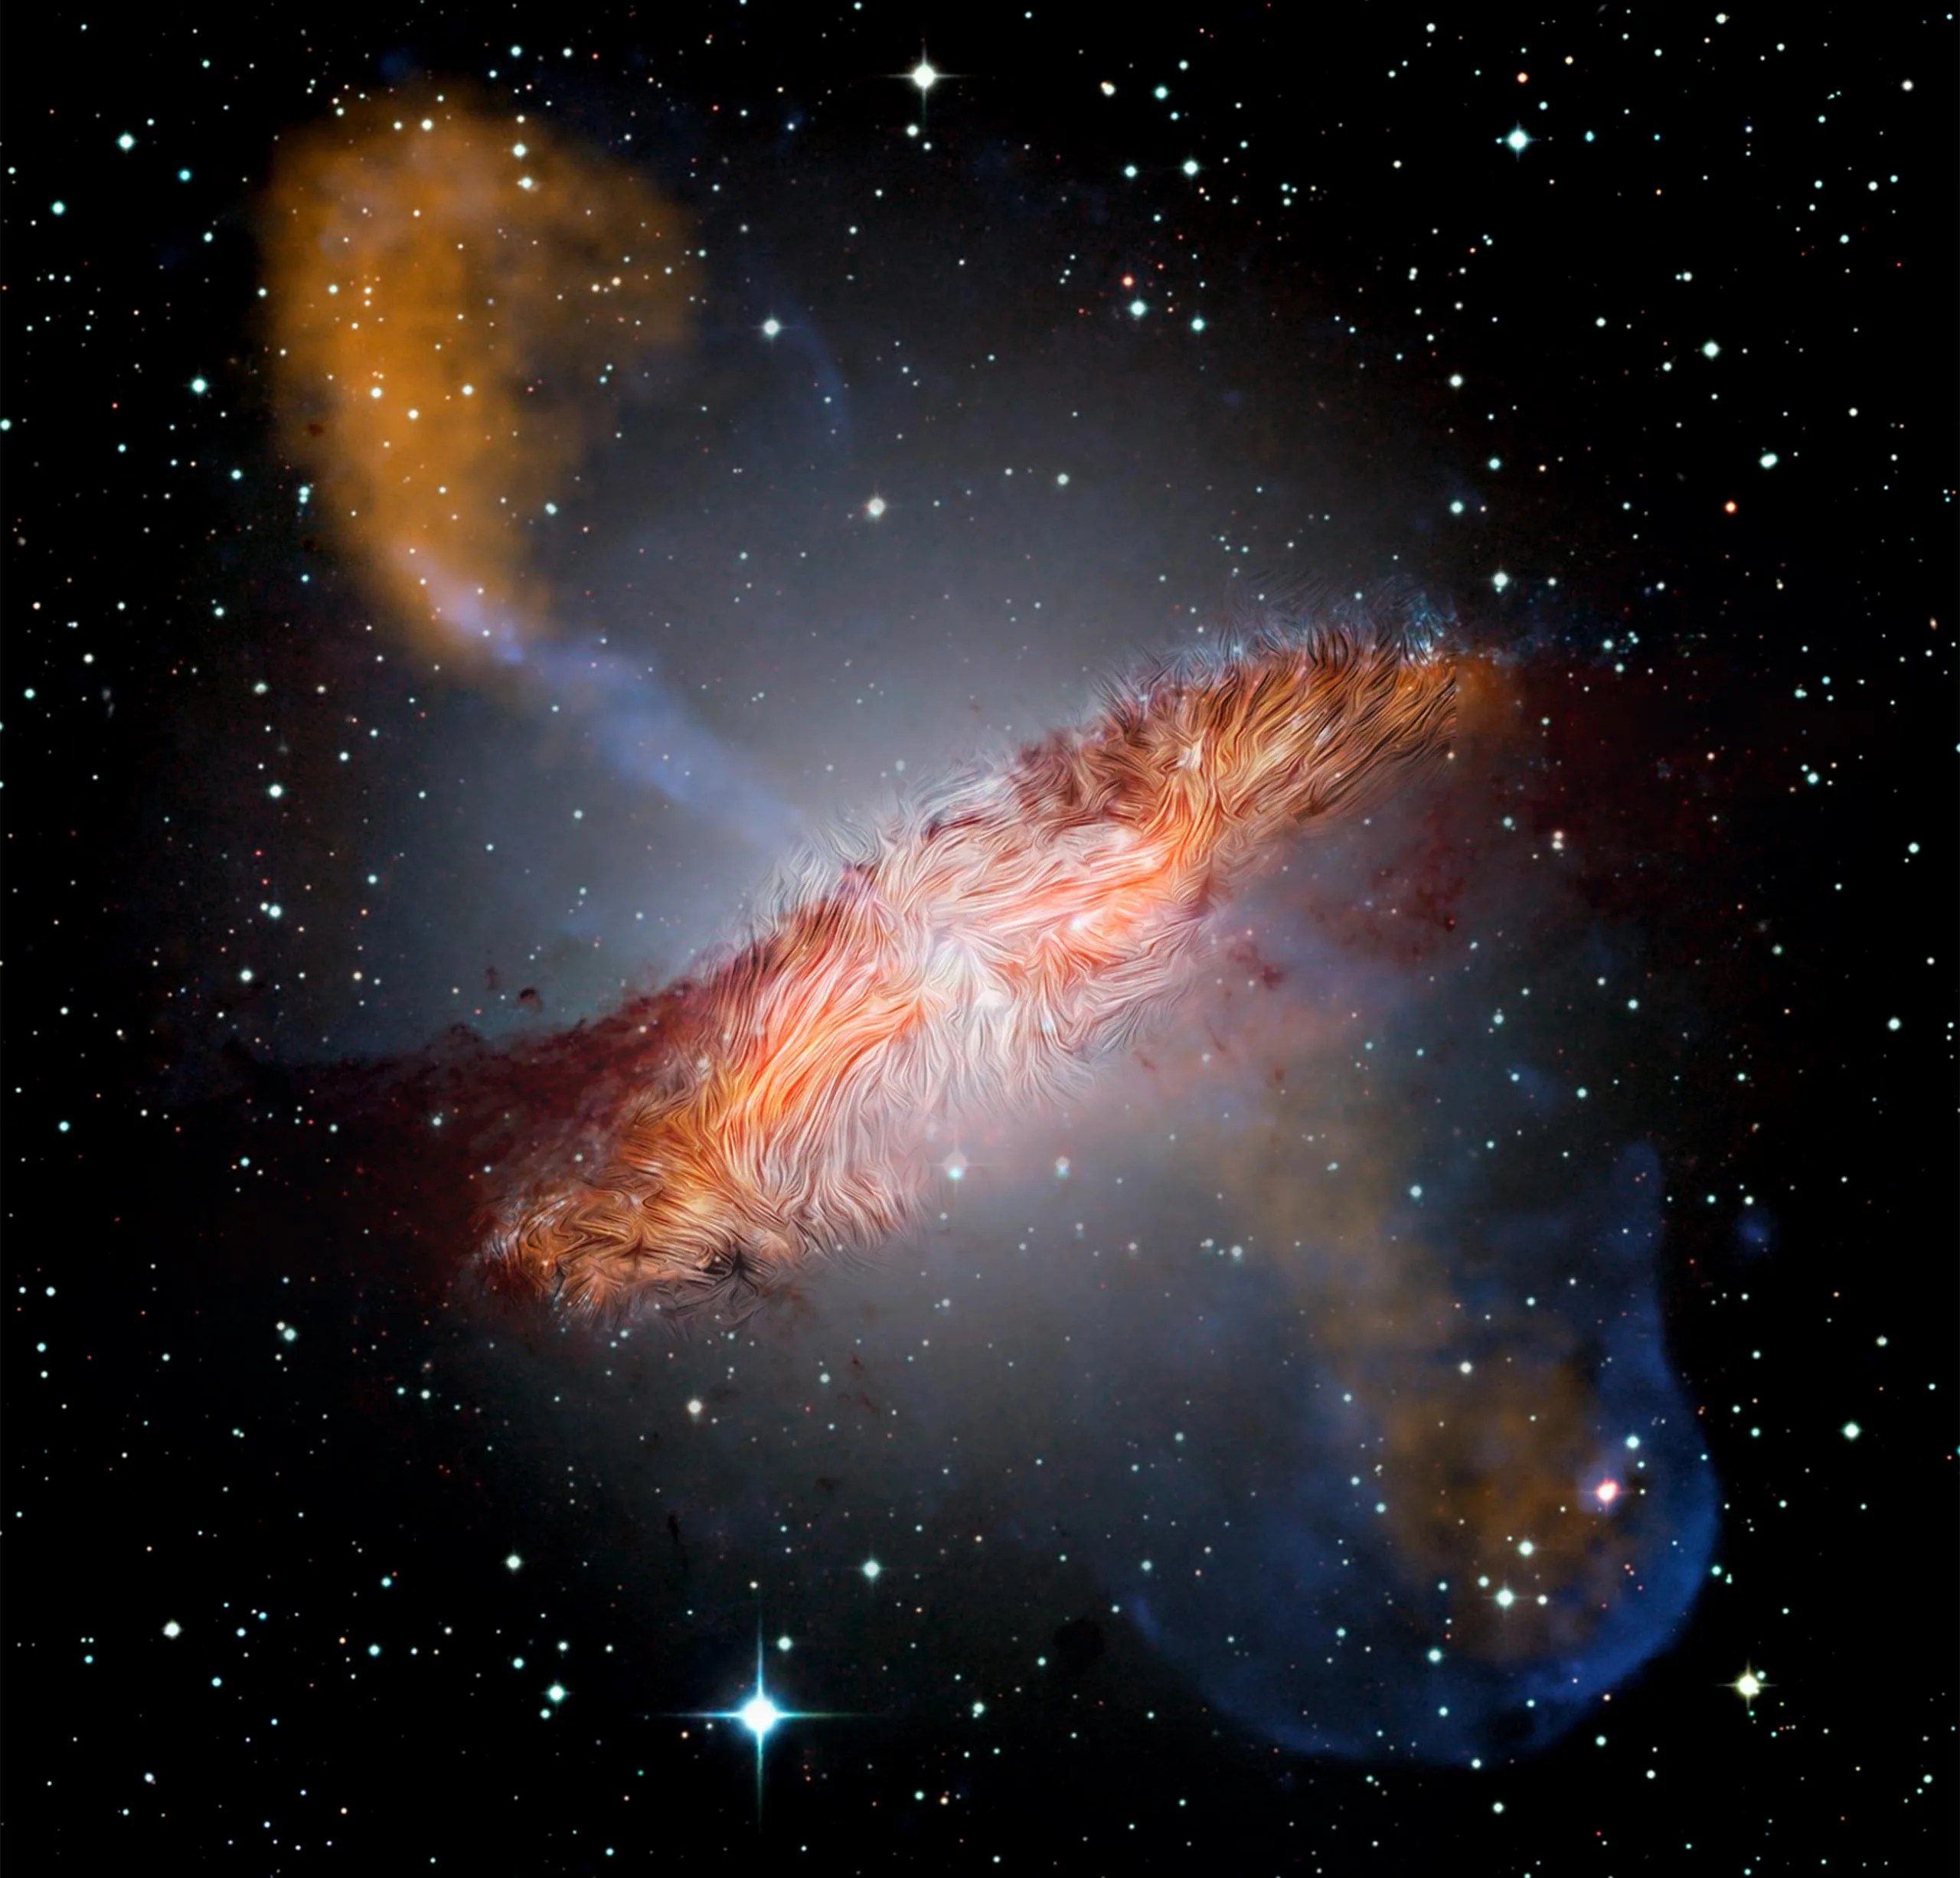 Los campos magnéticos observados por SOFIA en la galaxia Centaurus A en una imagen compuesta tomada en múltiples longitudes de onda por varios observatorios. Los campos magnéticos a gran escala, de 1.600 años luz de diámetro, son paralelos a los carriles de polvo que se ven en luz visible y otras longitudes de onda. Sin embargo, los campos aparecen retorcidos y distorsionados cerca del centro. Se trata de un remanente del campo magnético en forma de espiral de una de las galaxias originales que se fusionaro